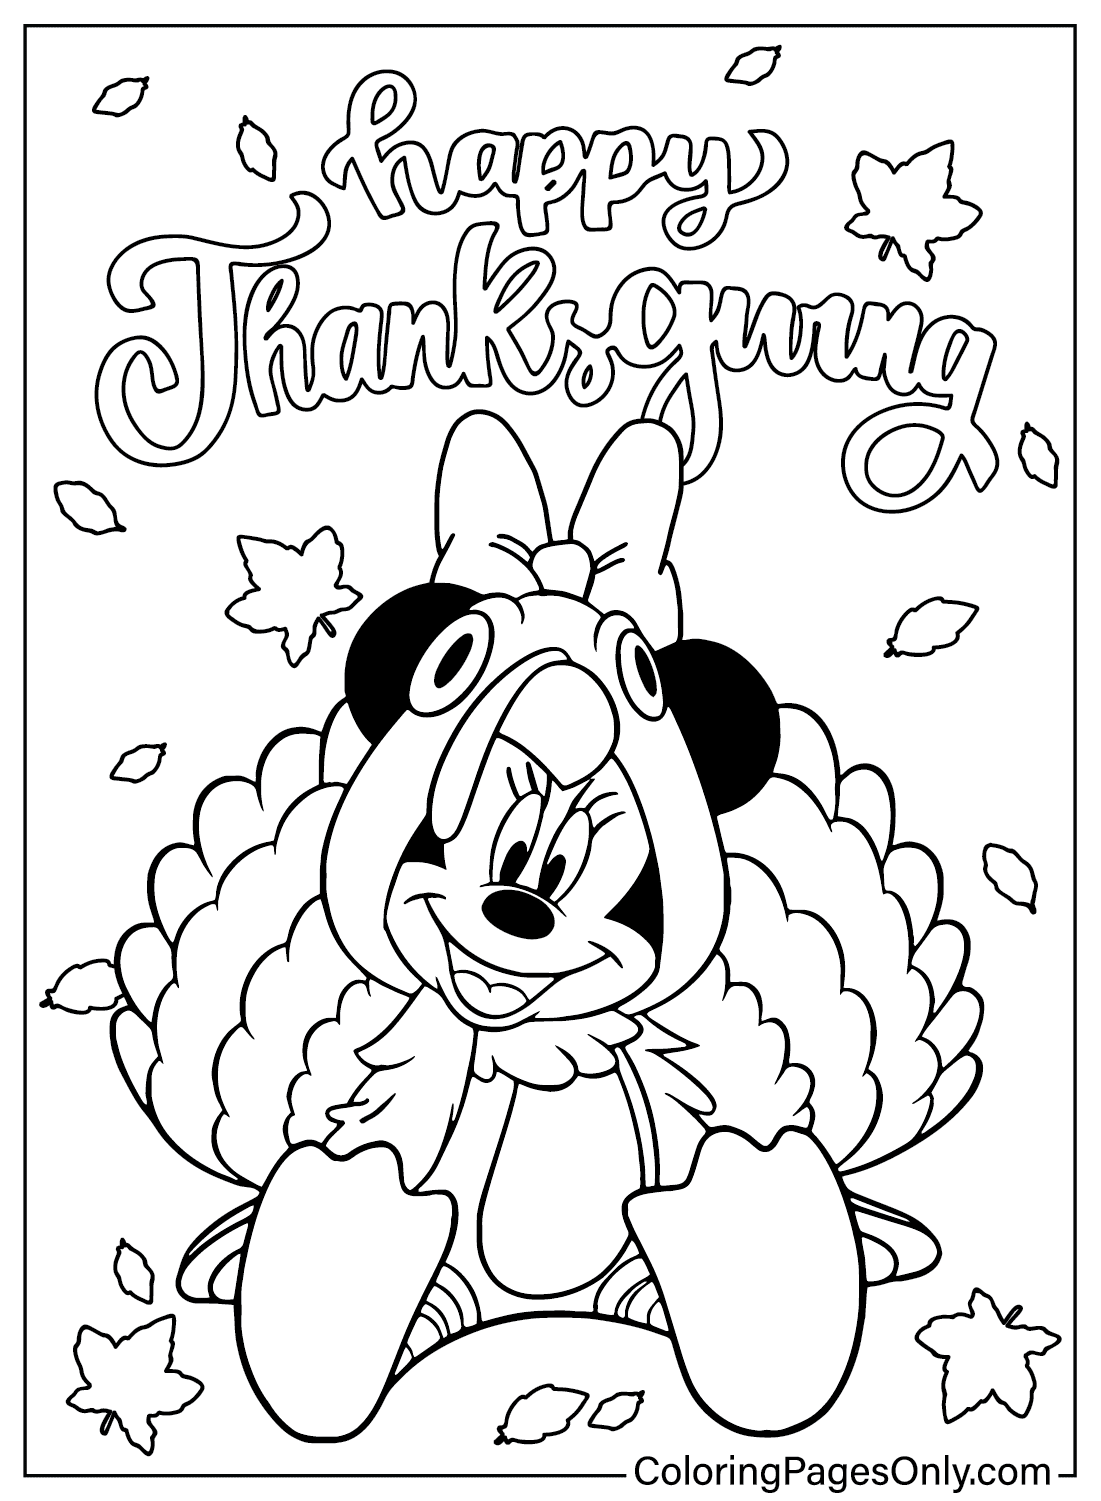 Página para colorear de Acción de Gracias de Minnie Mouse de Acción de Gracias de Disney